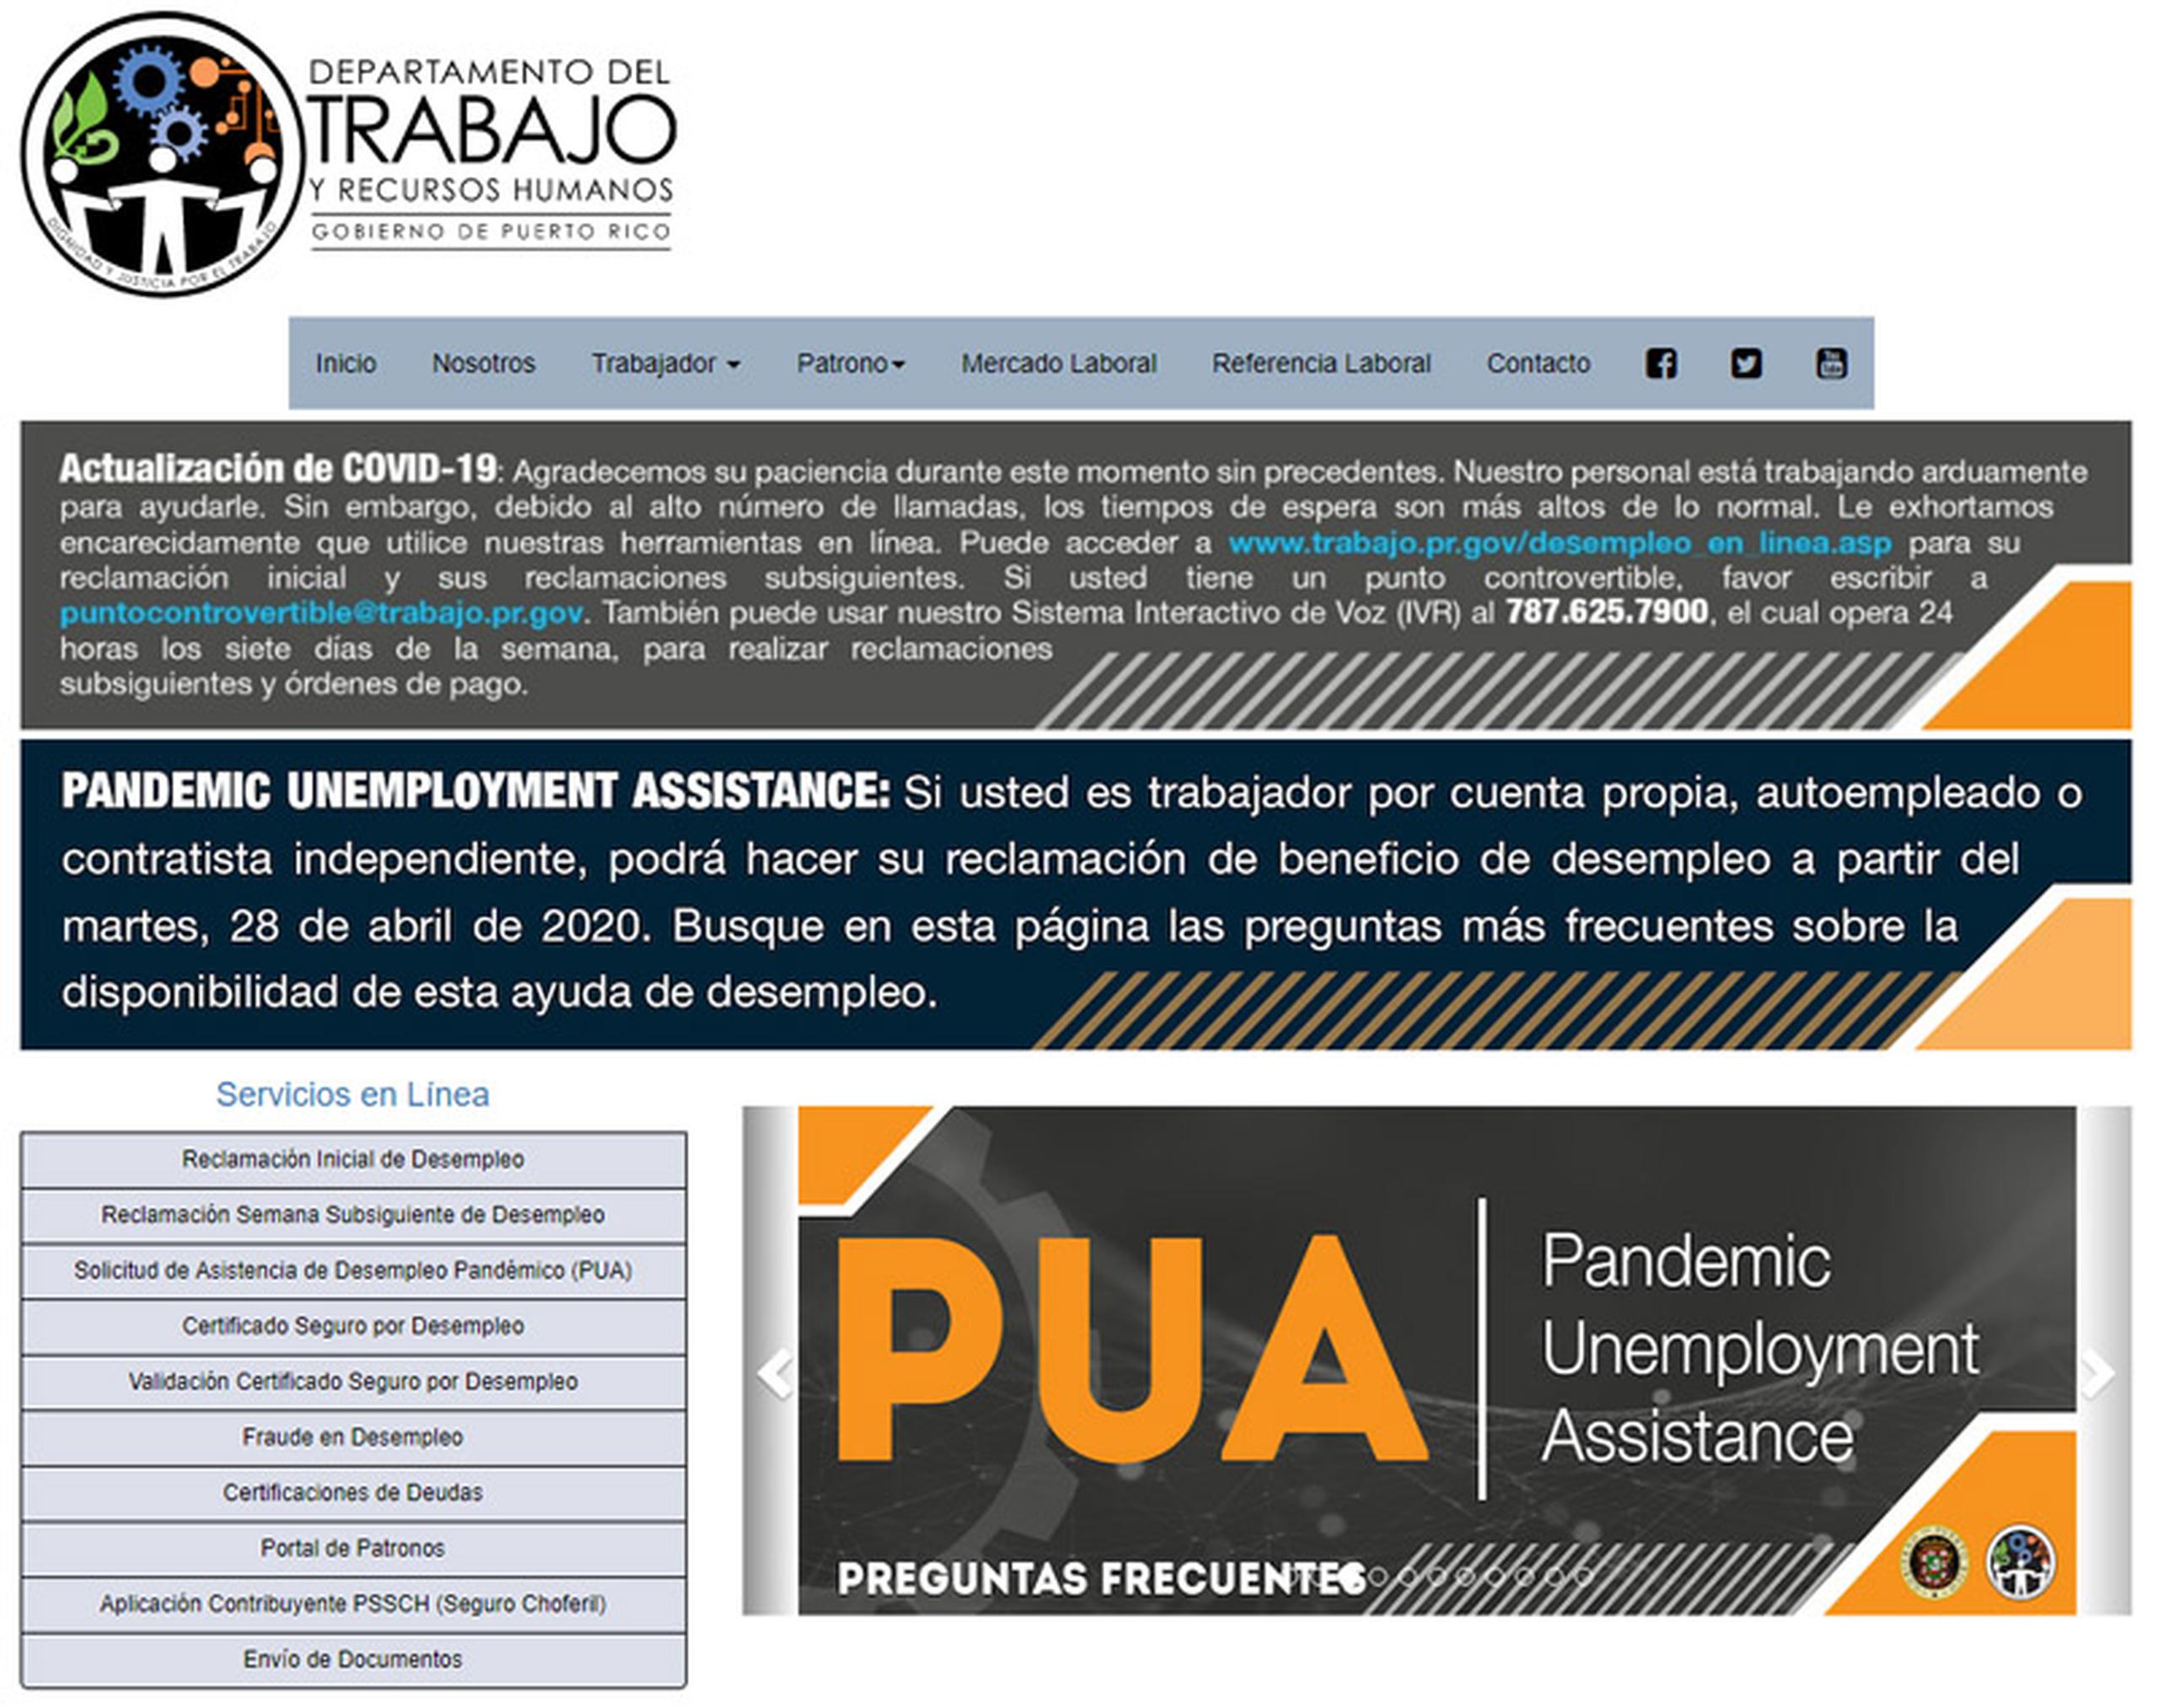 Programa de Asistencia de Desempleo por Pandemia (PUA, por sus siglas en inglés).